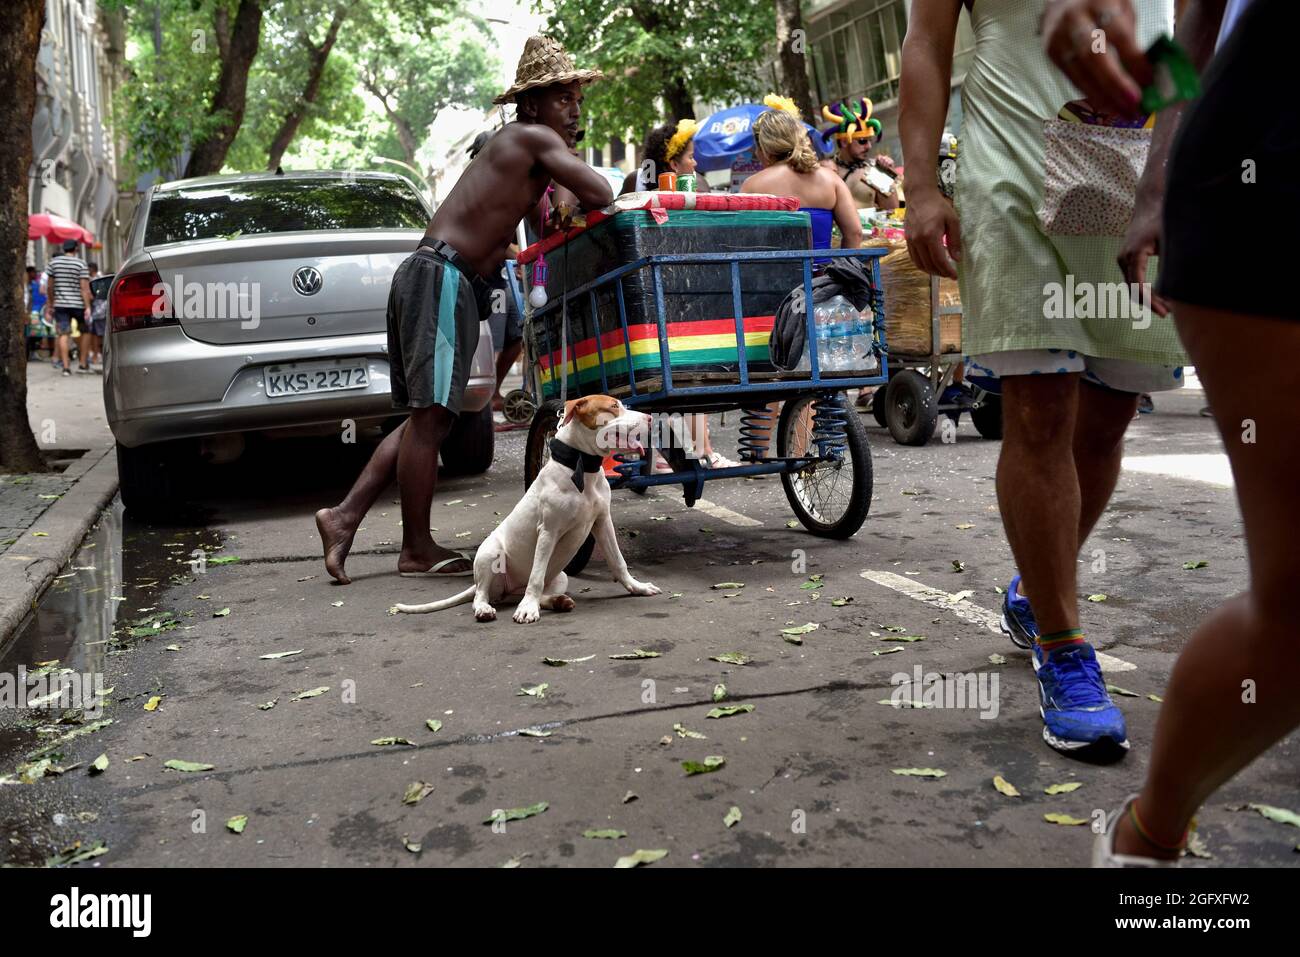 Brasile - 16 febbraio 2020: Un venditore di strada aiutato dal suo cane vende bevande rinfrescanti durante una sfilata di carnevale di strada tenuta nel centro di Rio de Janeiro. Foto Stock